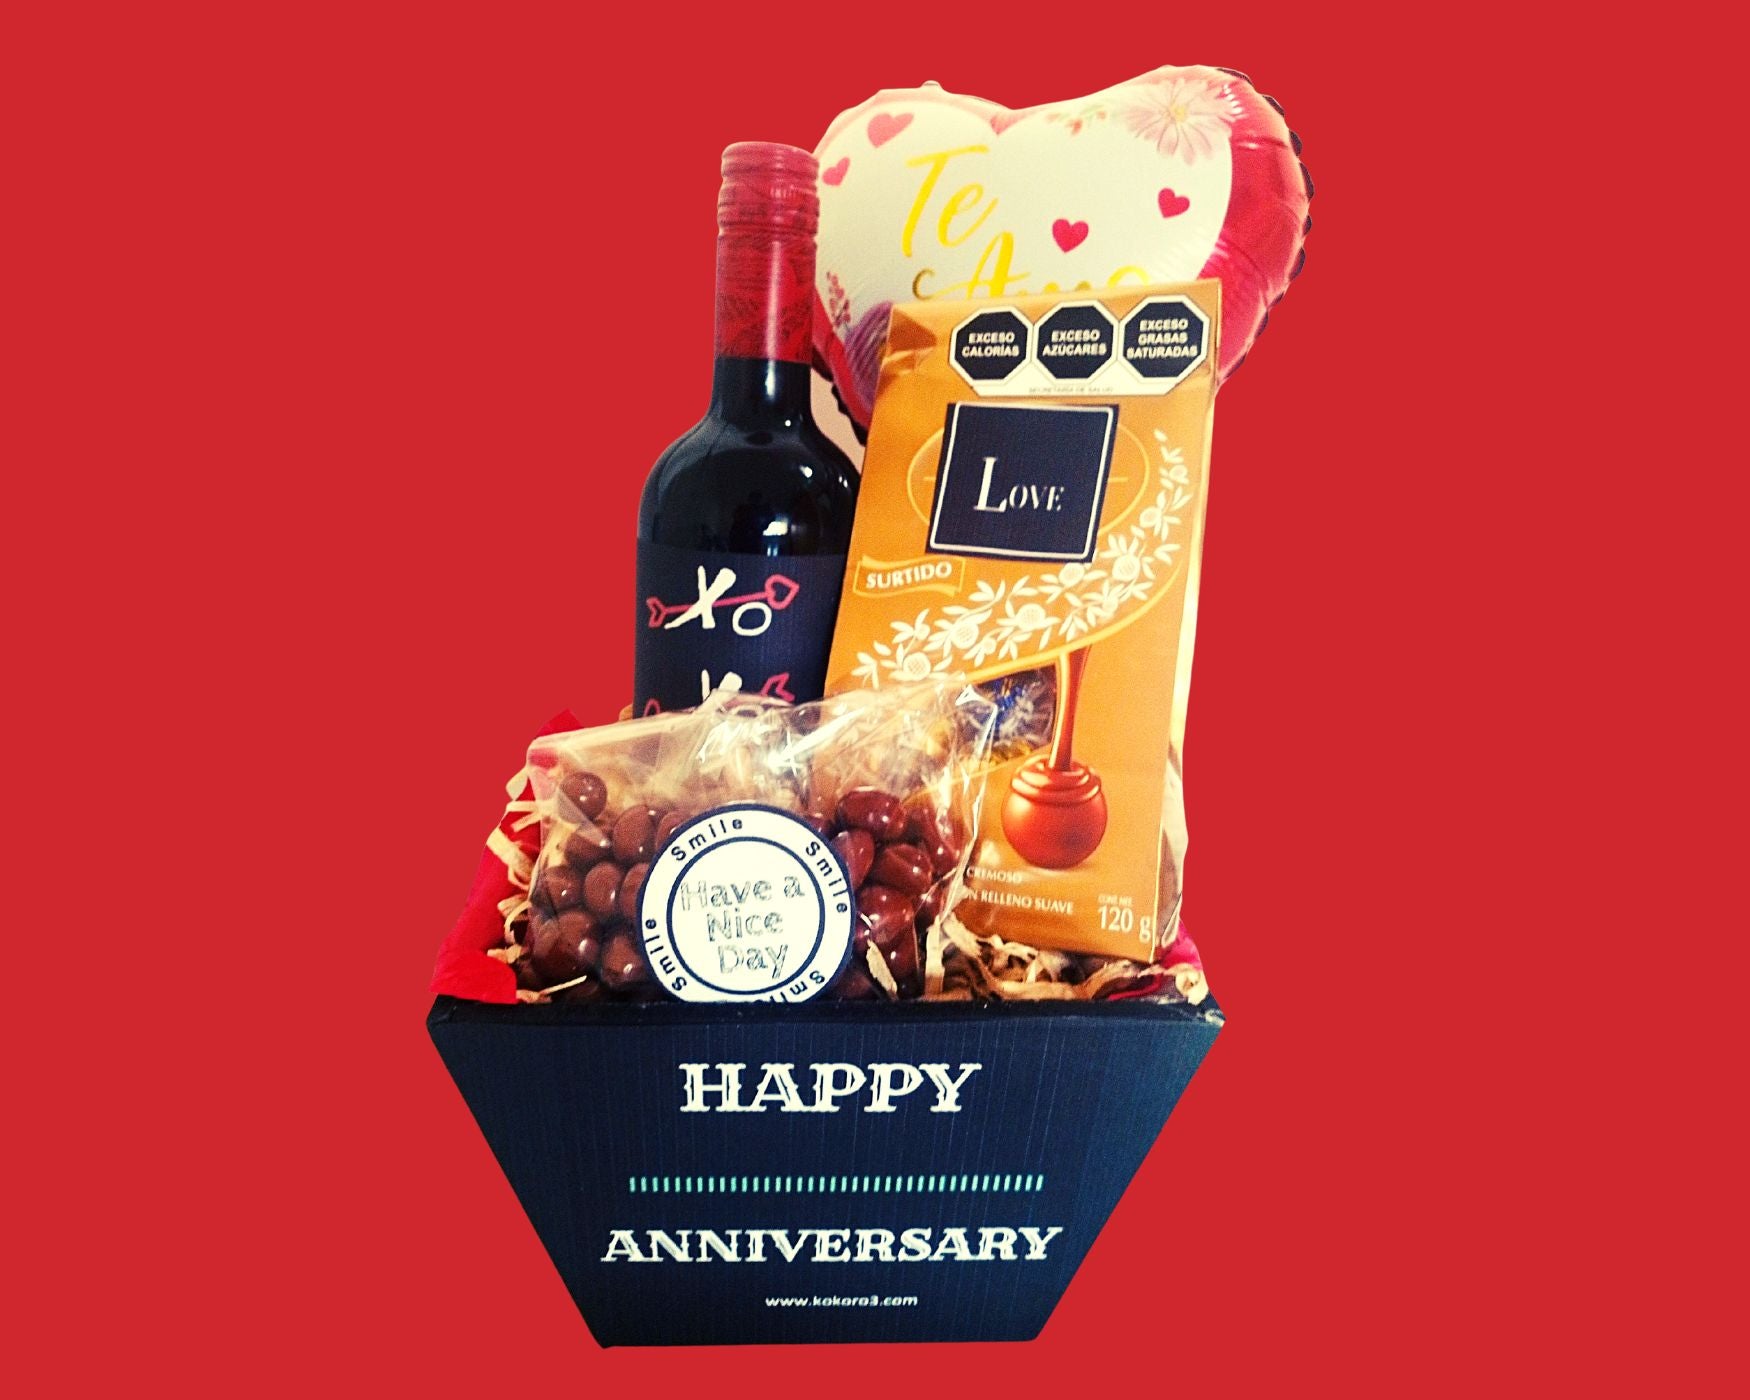 Regalo Aniversario Vino y chocolate – Regalos Kokoro3